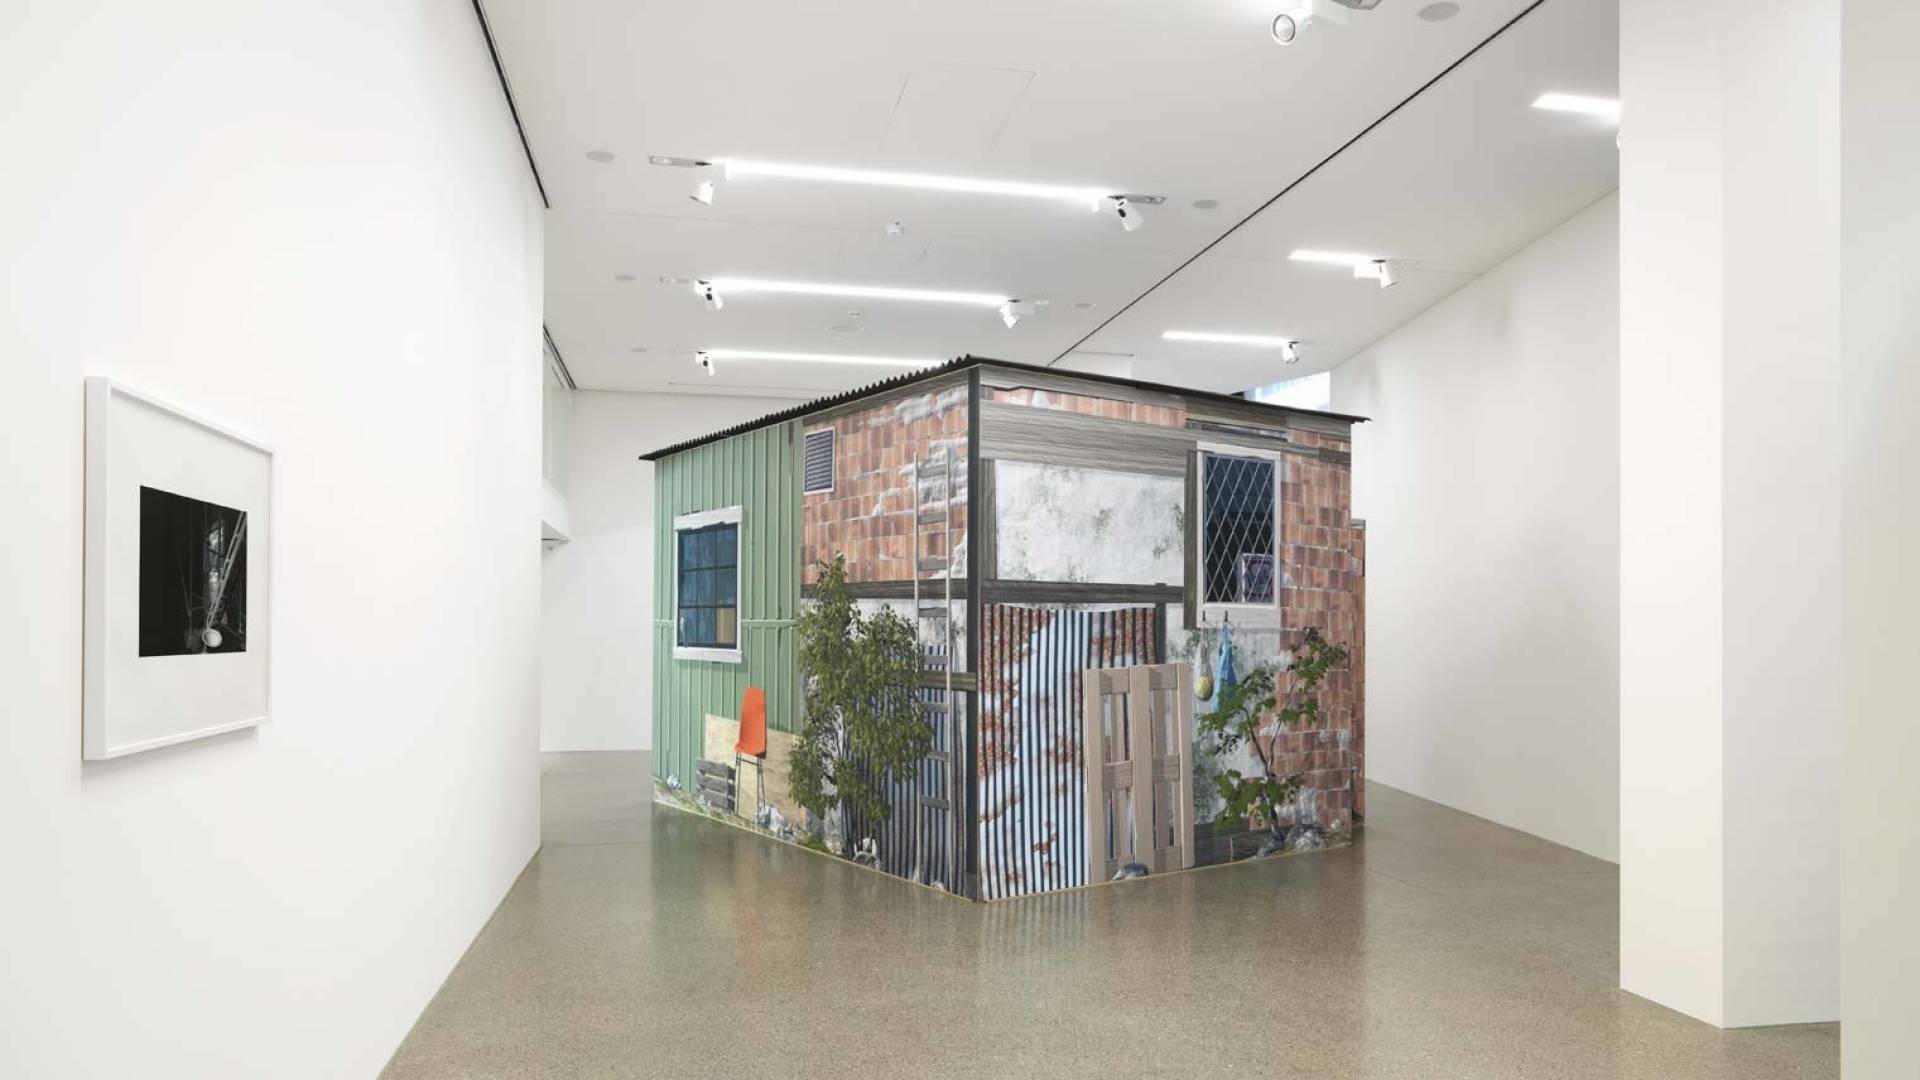 L’esposizione attuale nell’Helvetia Art Foyer di Basilea presenta un’installazione interattiva della coppia di artisti Studer e van den Berg.